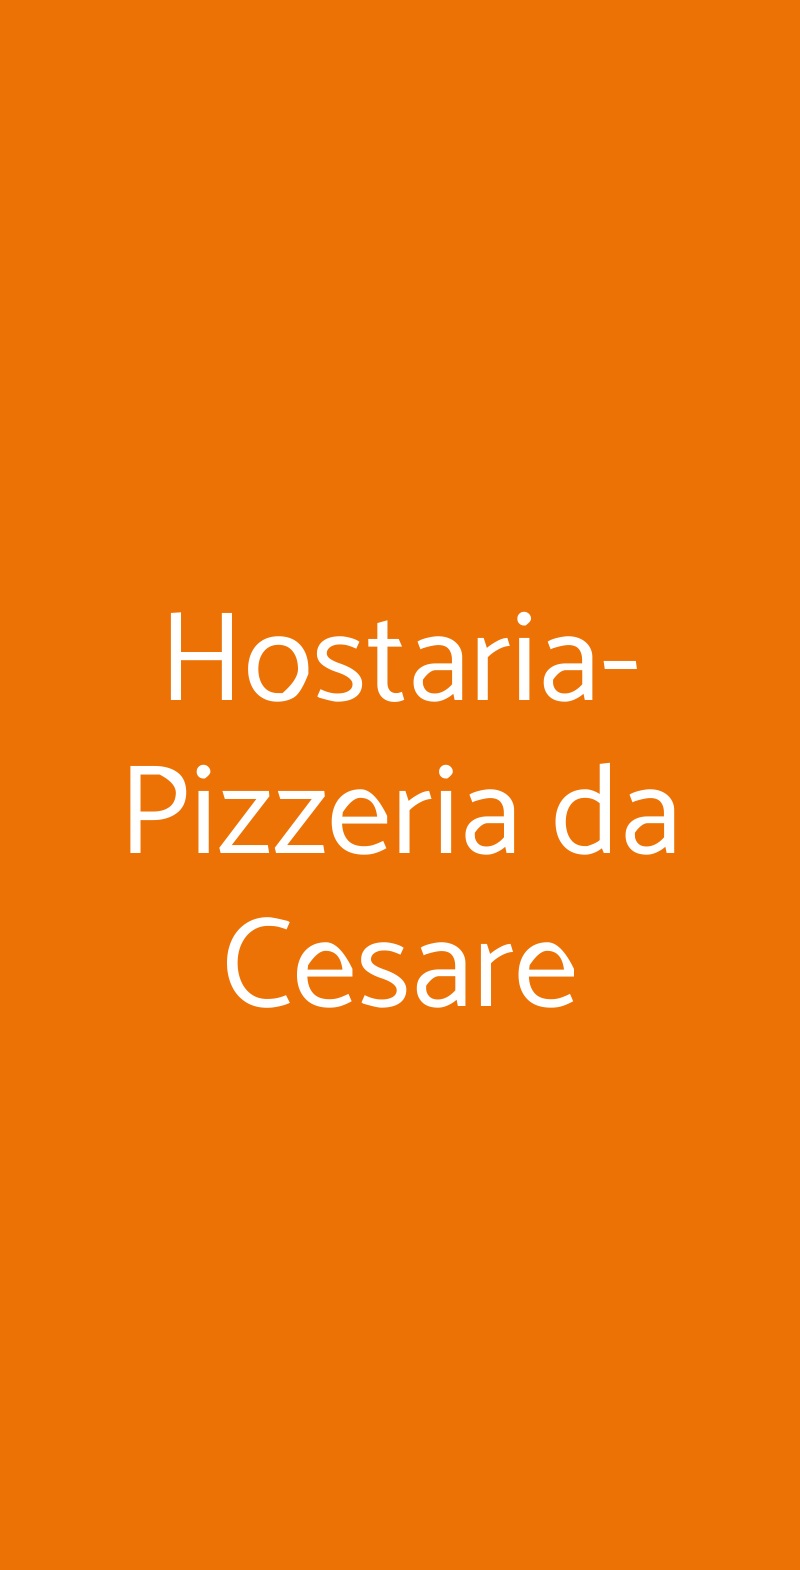 Hostaria-Pizzeria da Cesare Roma menù 1 pagina